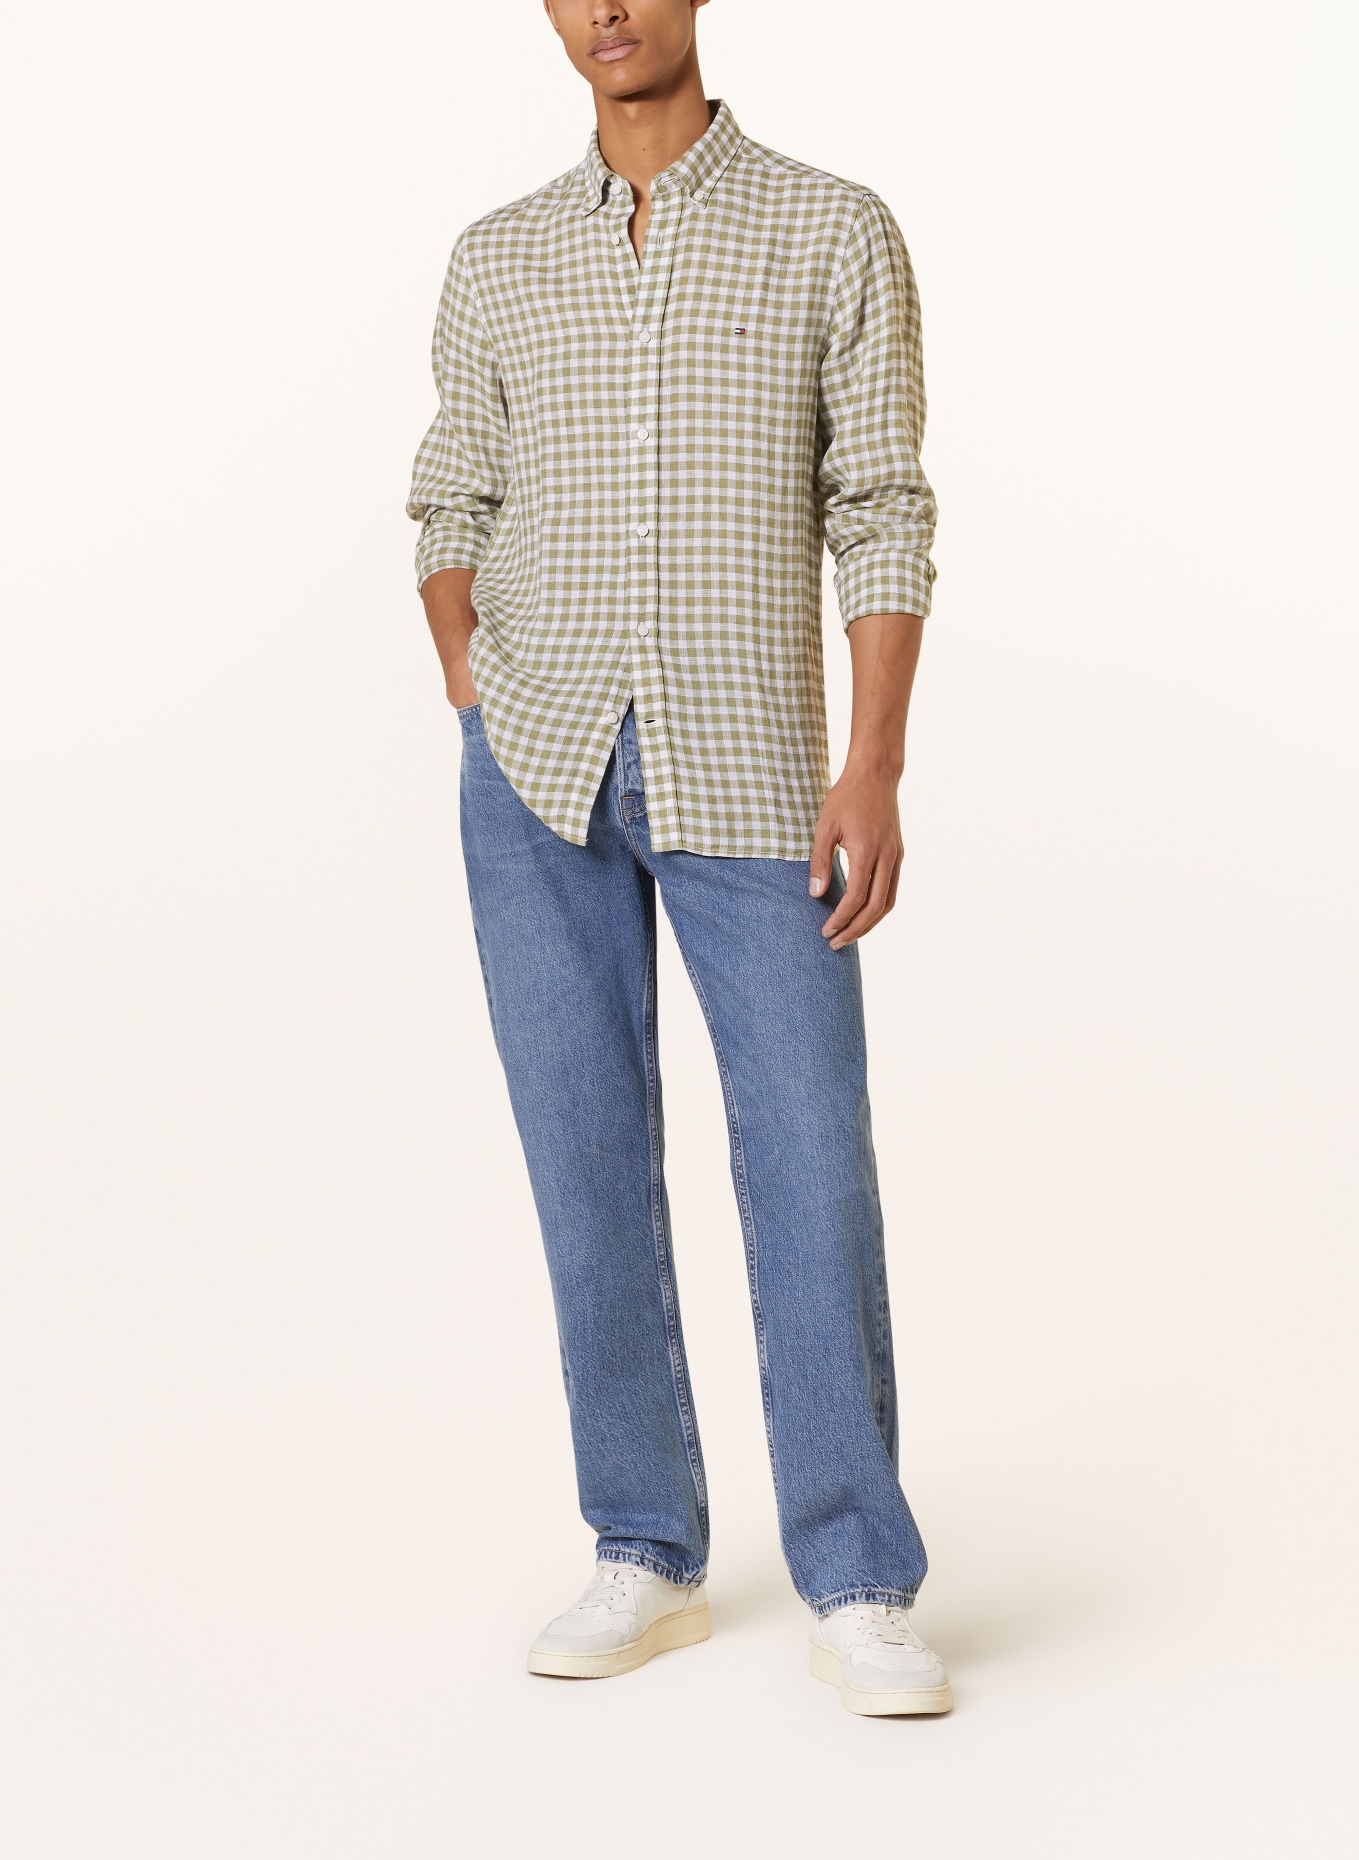 TOMMY HILFIGER Leinenhemd Slim Fit, Farbe: OLIV/ WEISS (Bild 2)